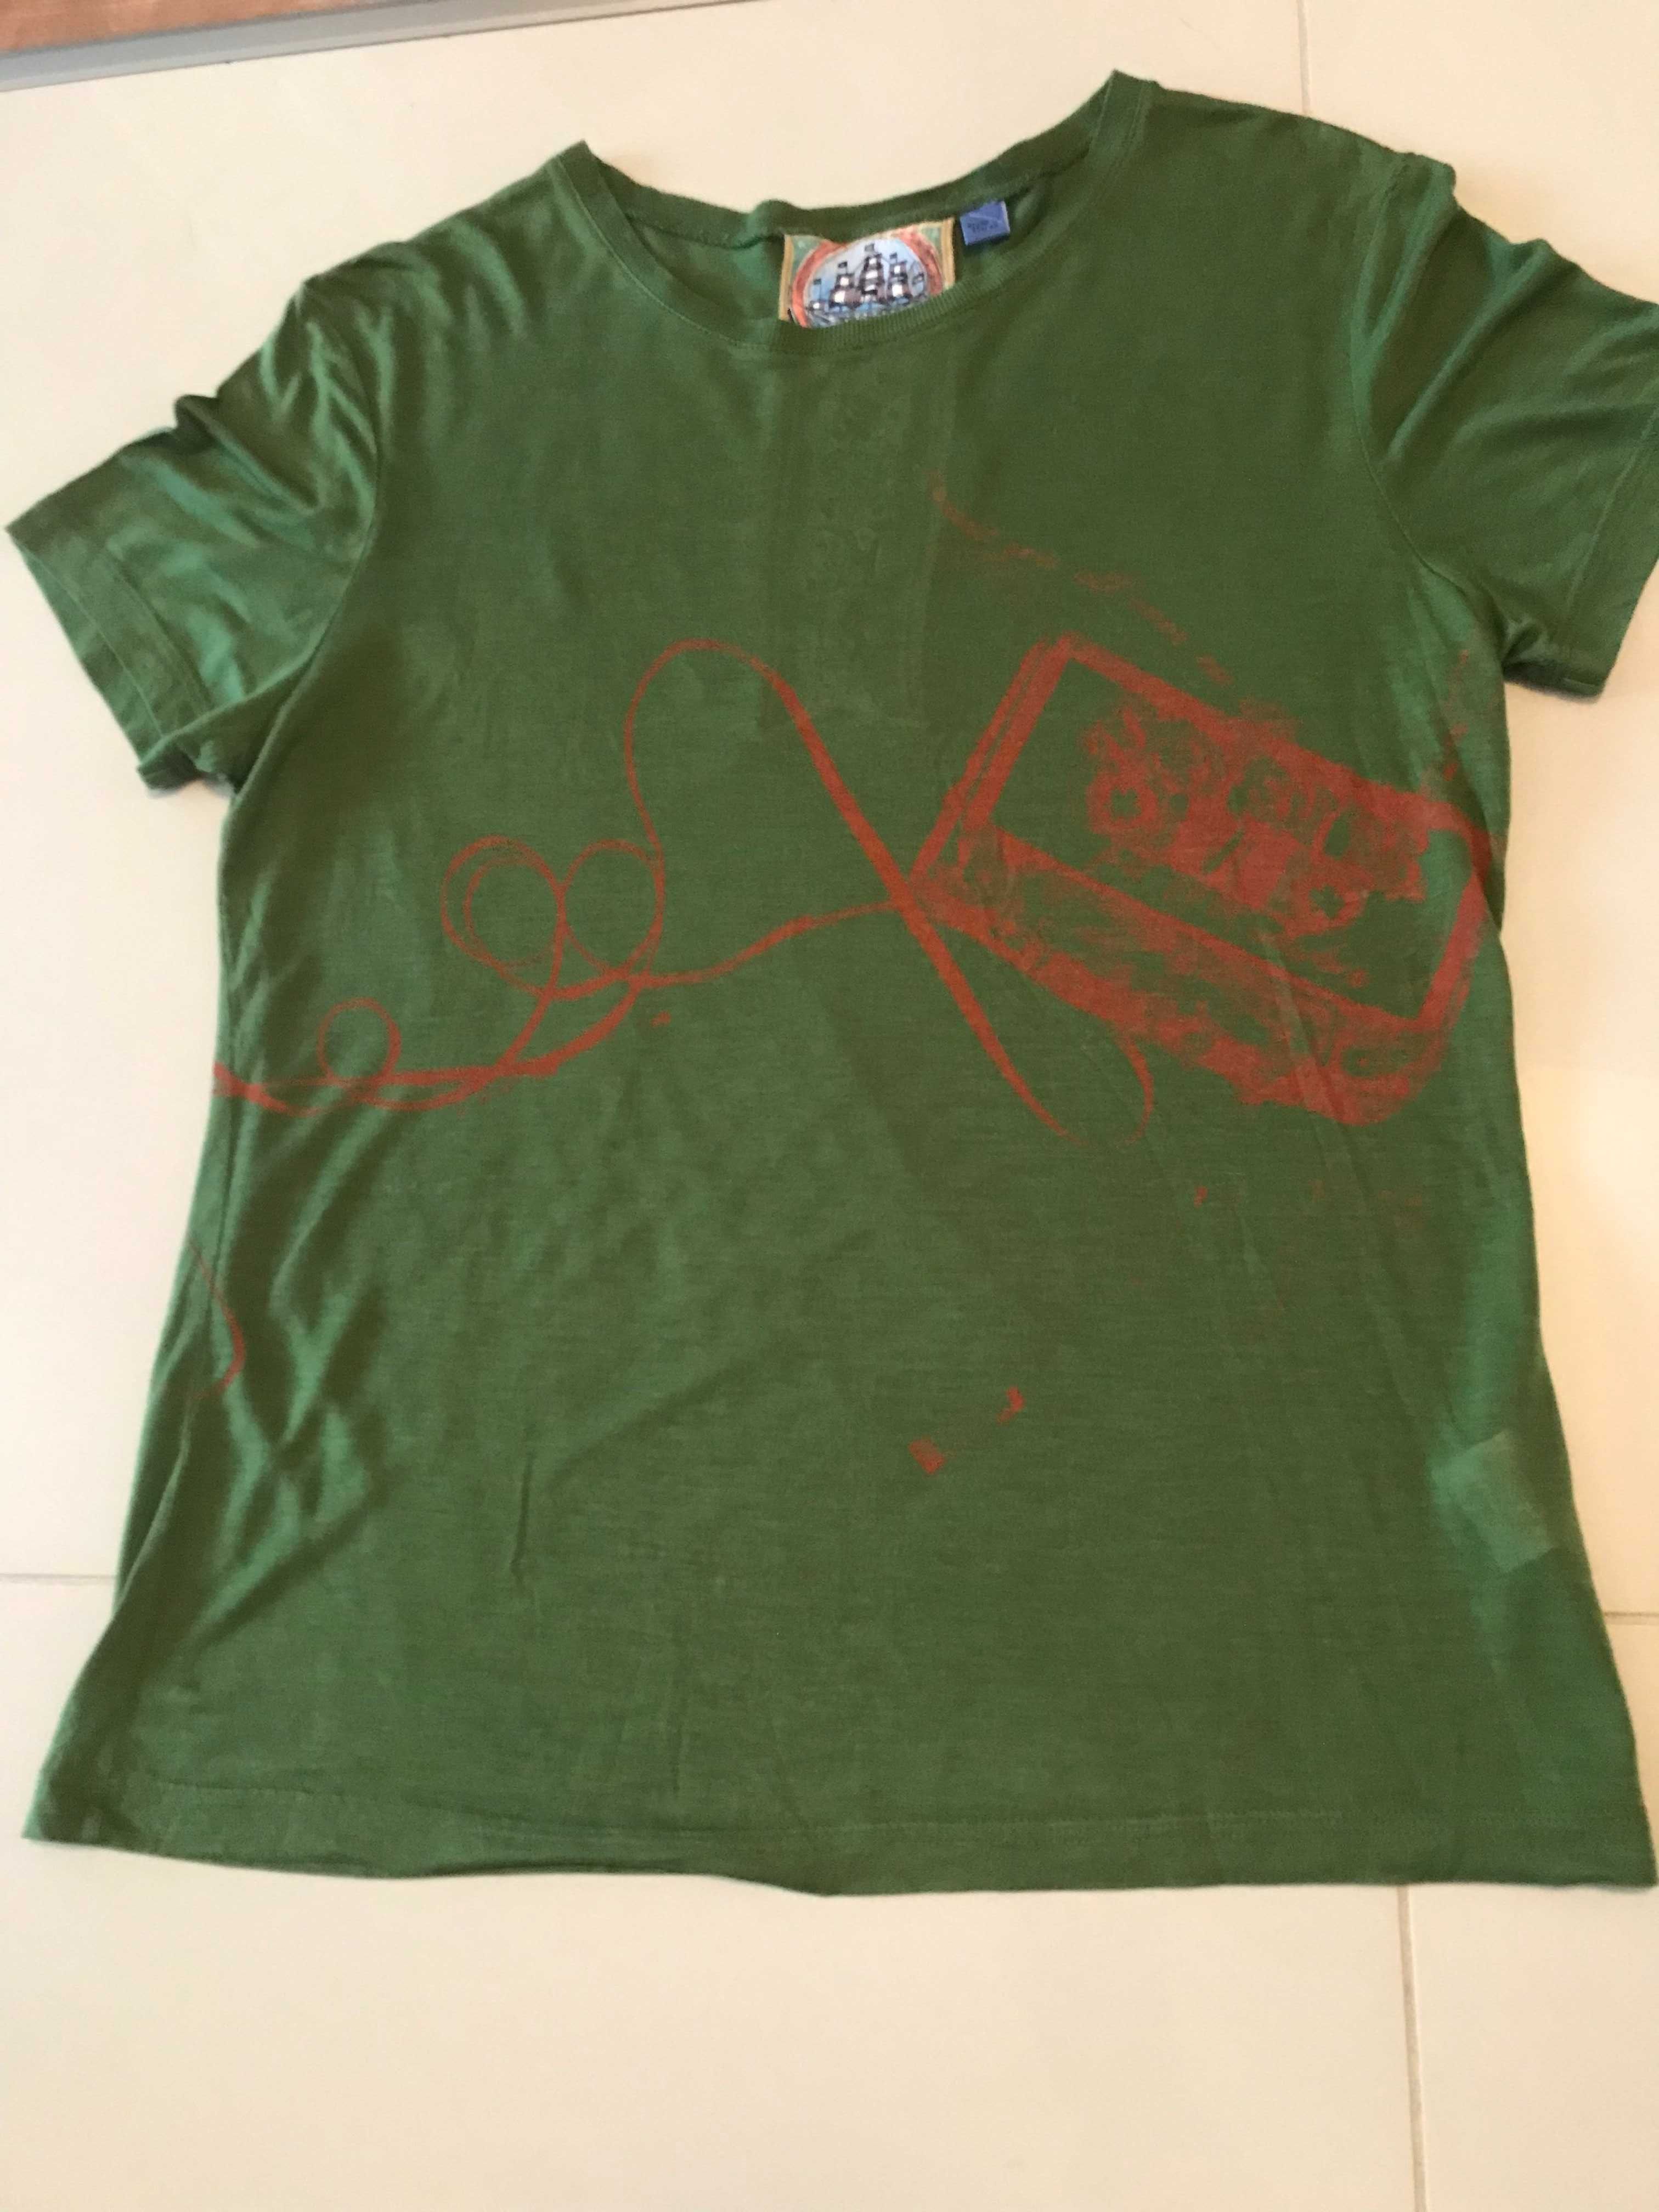 T-shirt z ryonu L.A.M.B unikat z kasetą magnetofonową z 2005